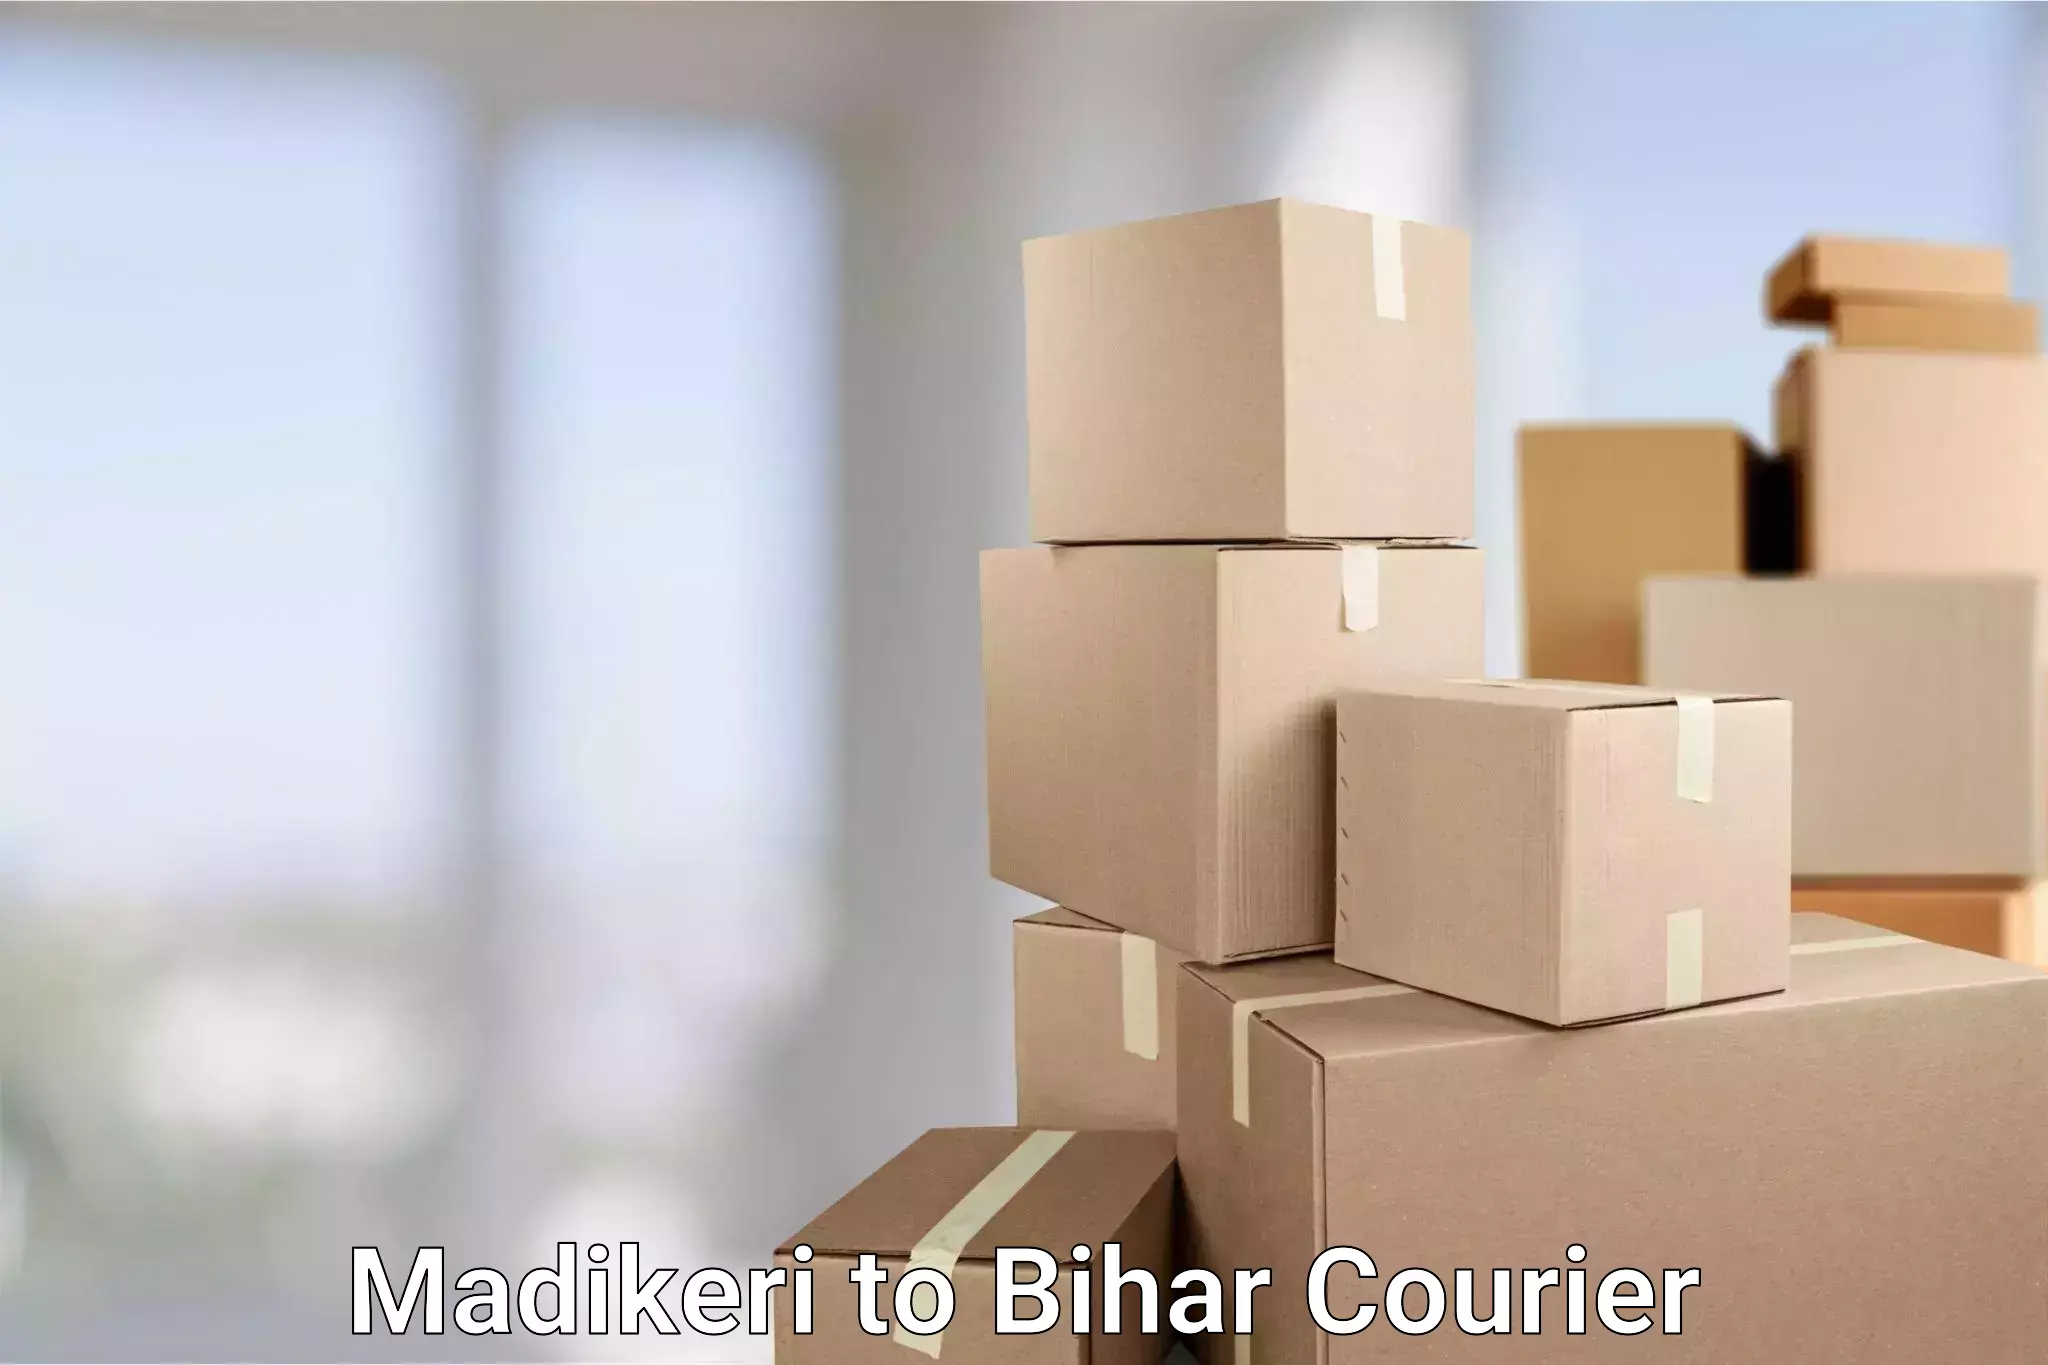 Express mail service Madikeri to Bihar